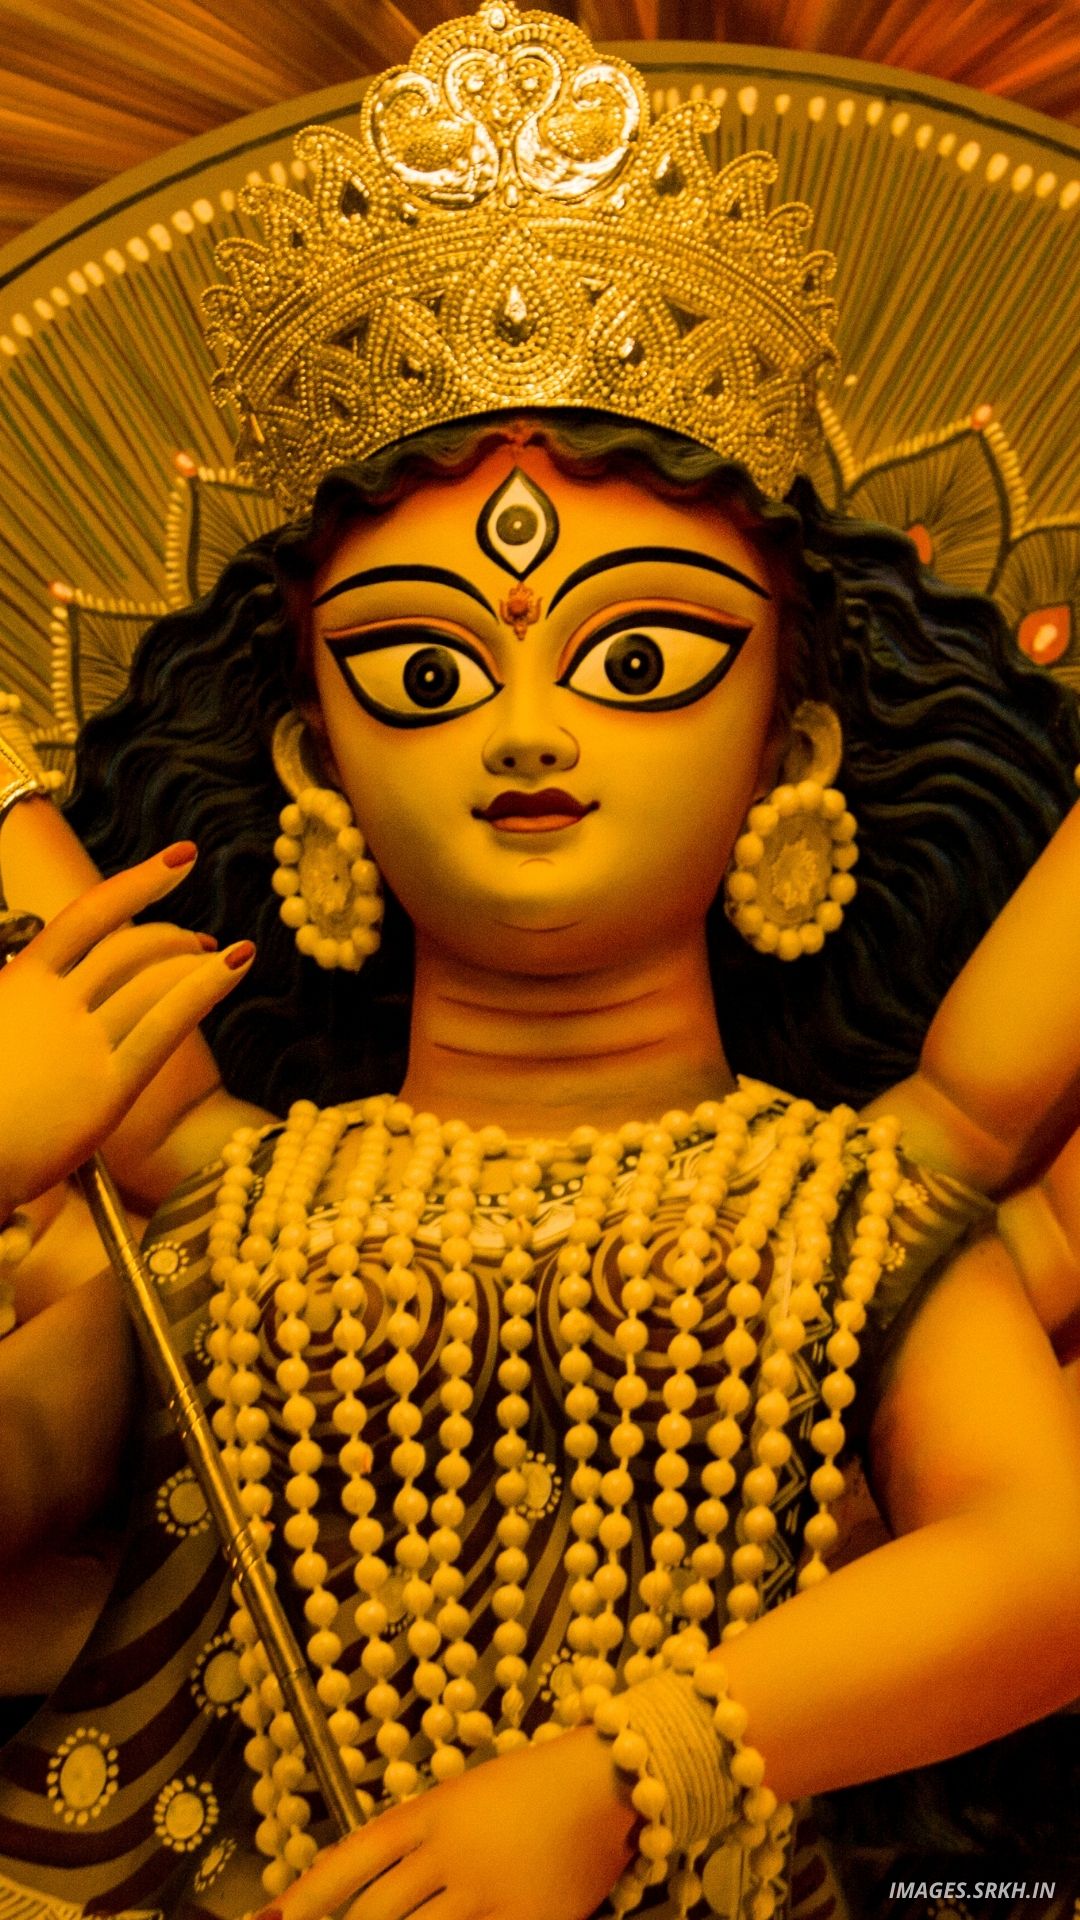 🔥 Durga Puja Wallpaper Images Download free - Images SRkh